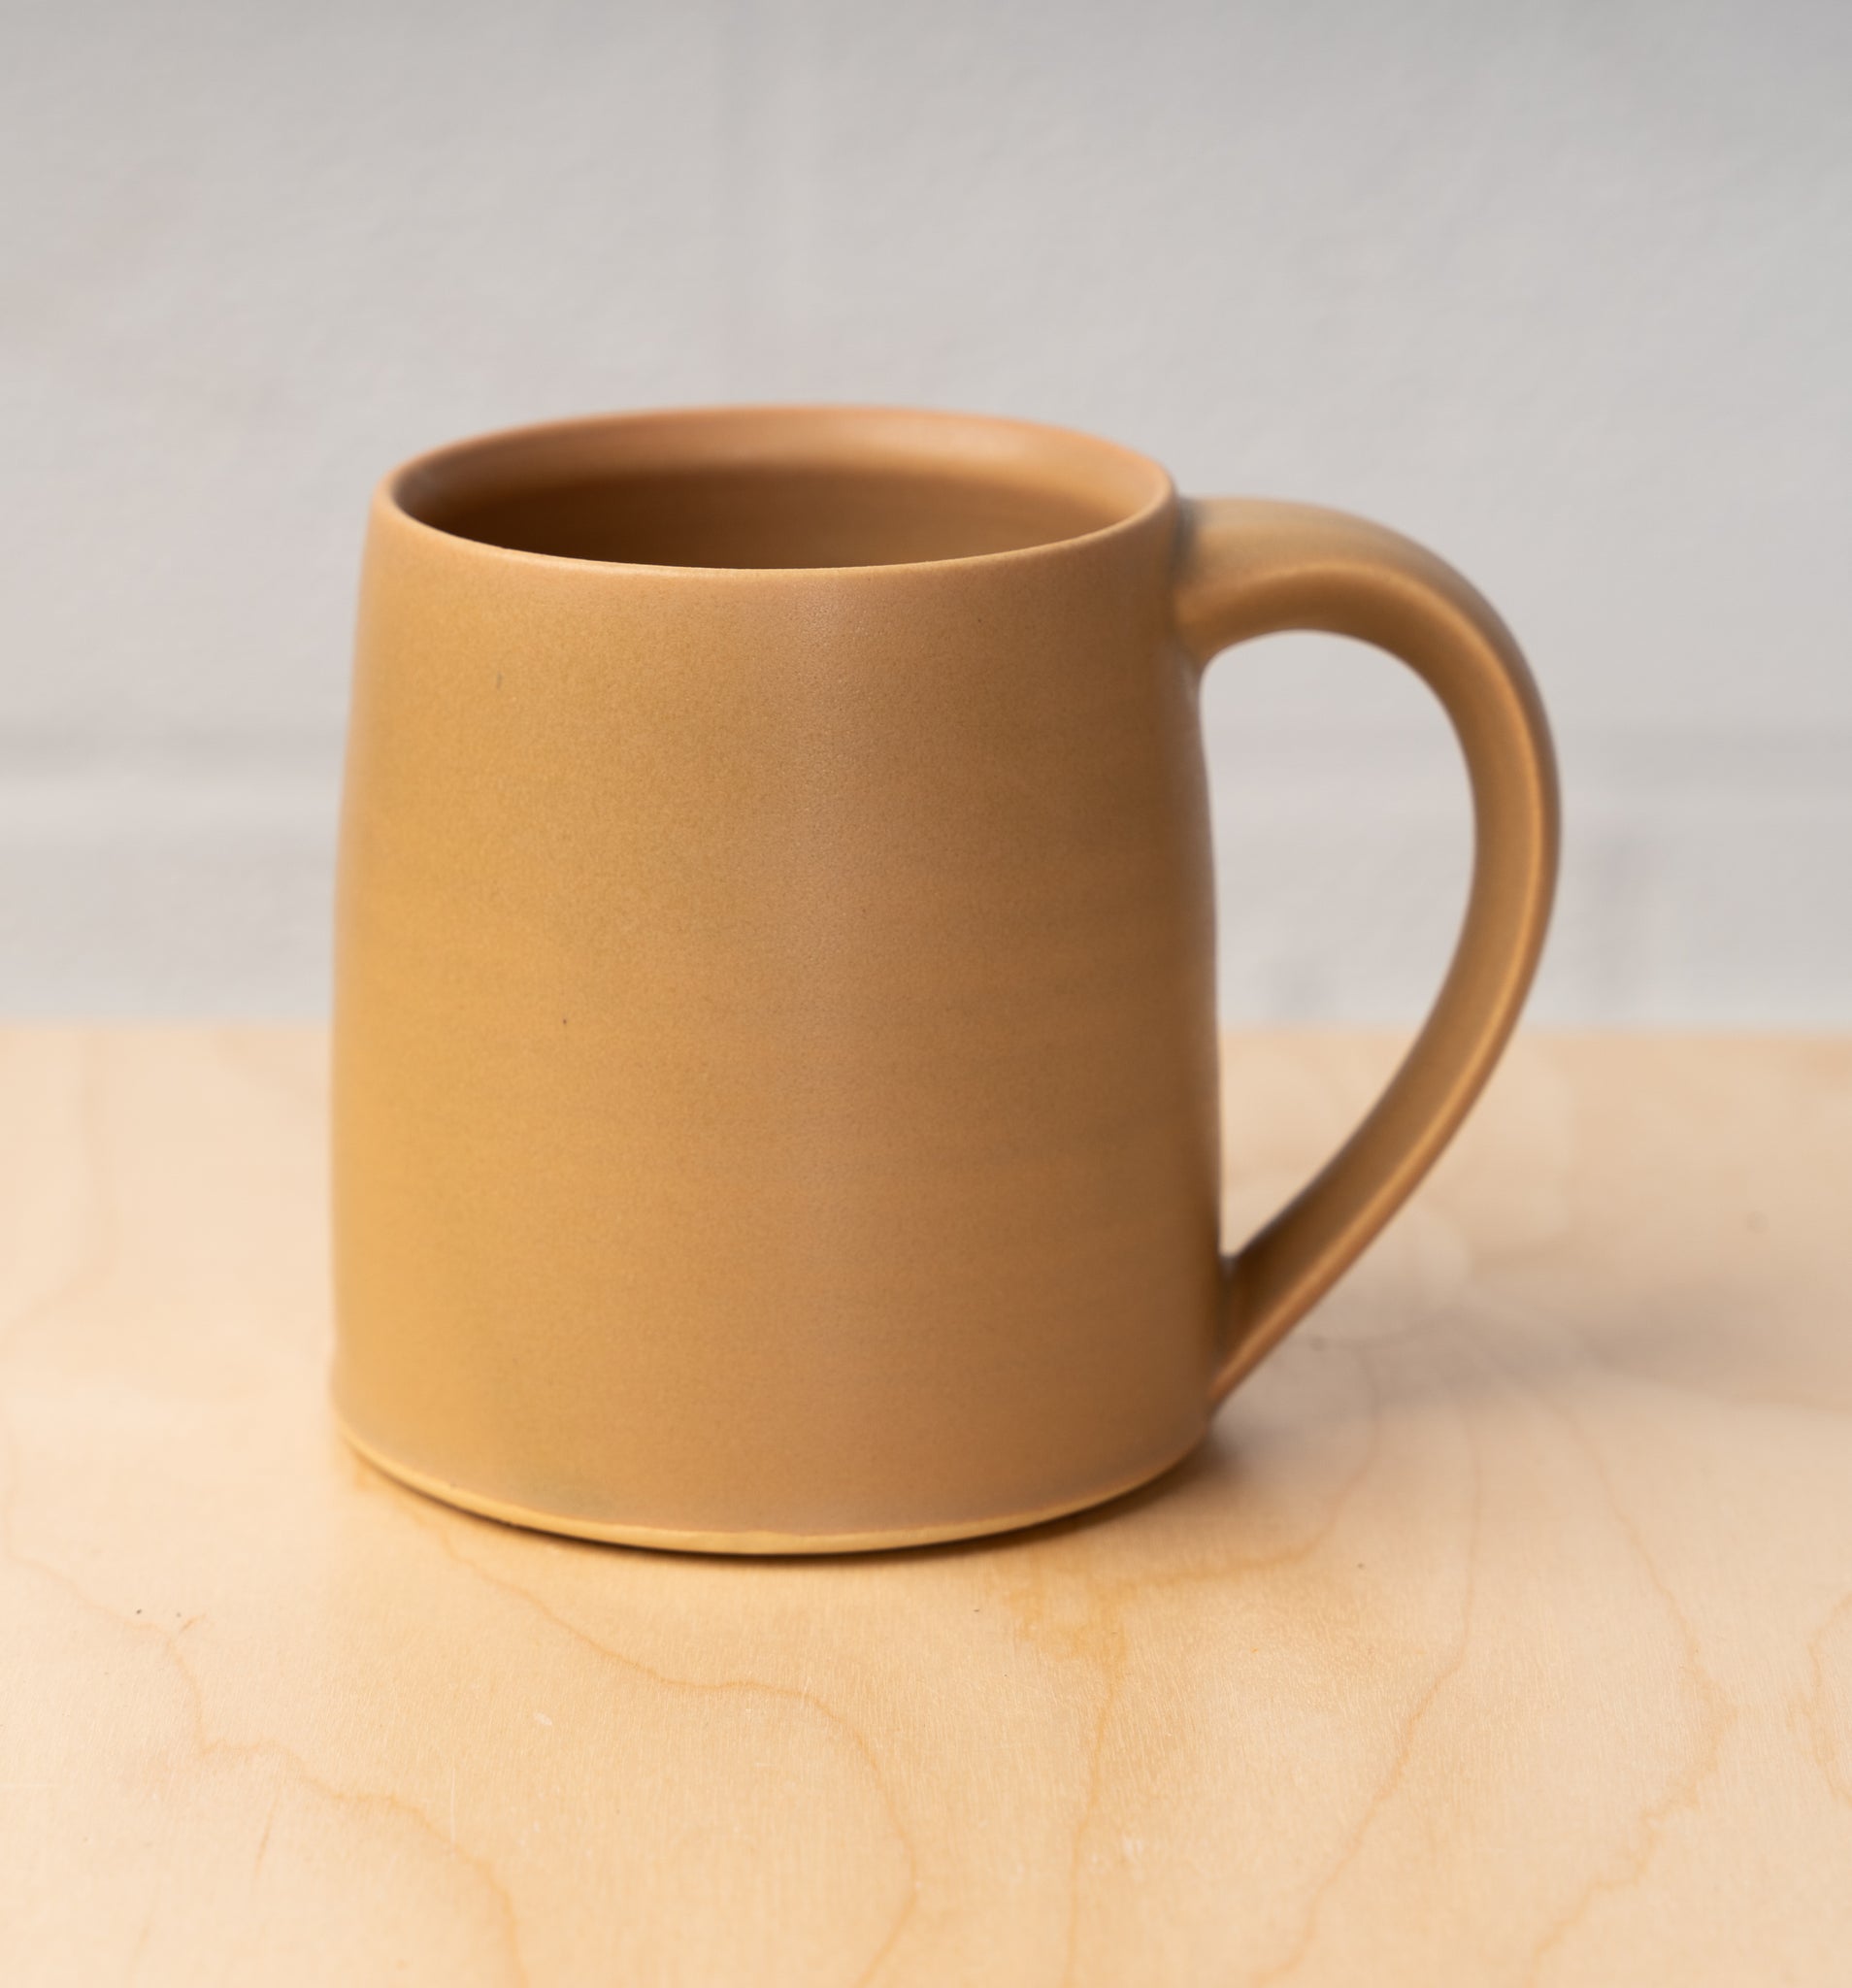 Handmade Mug by Addis Ceramics